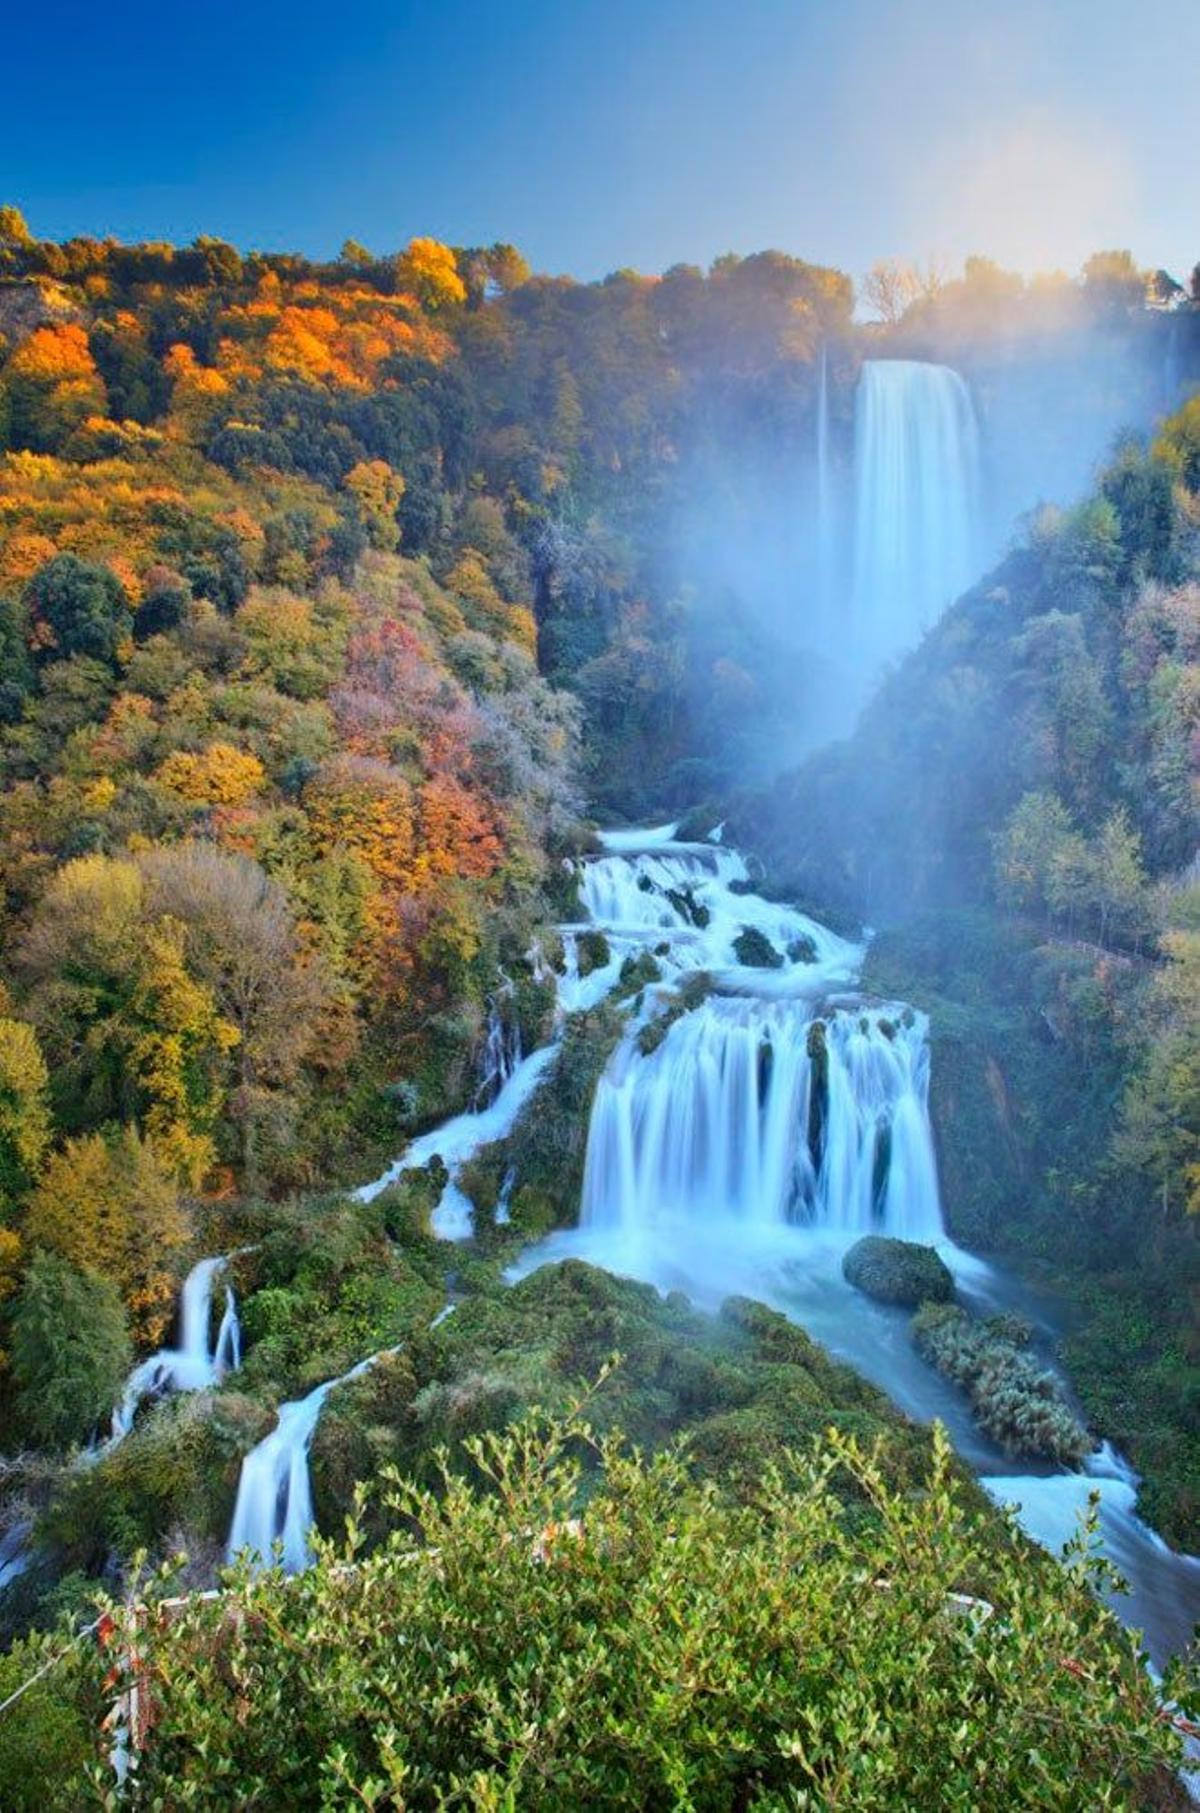 La cascada de Marmore se encuentra en la región italiana de Umbría.